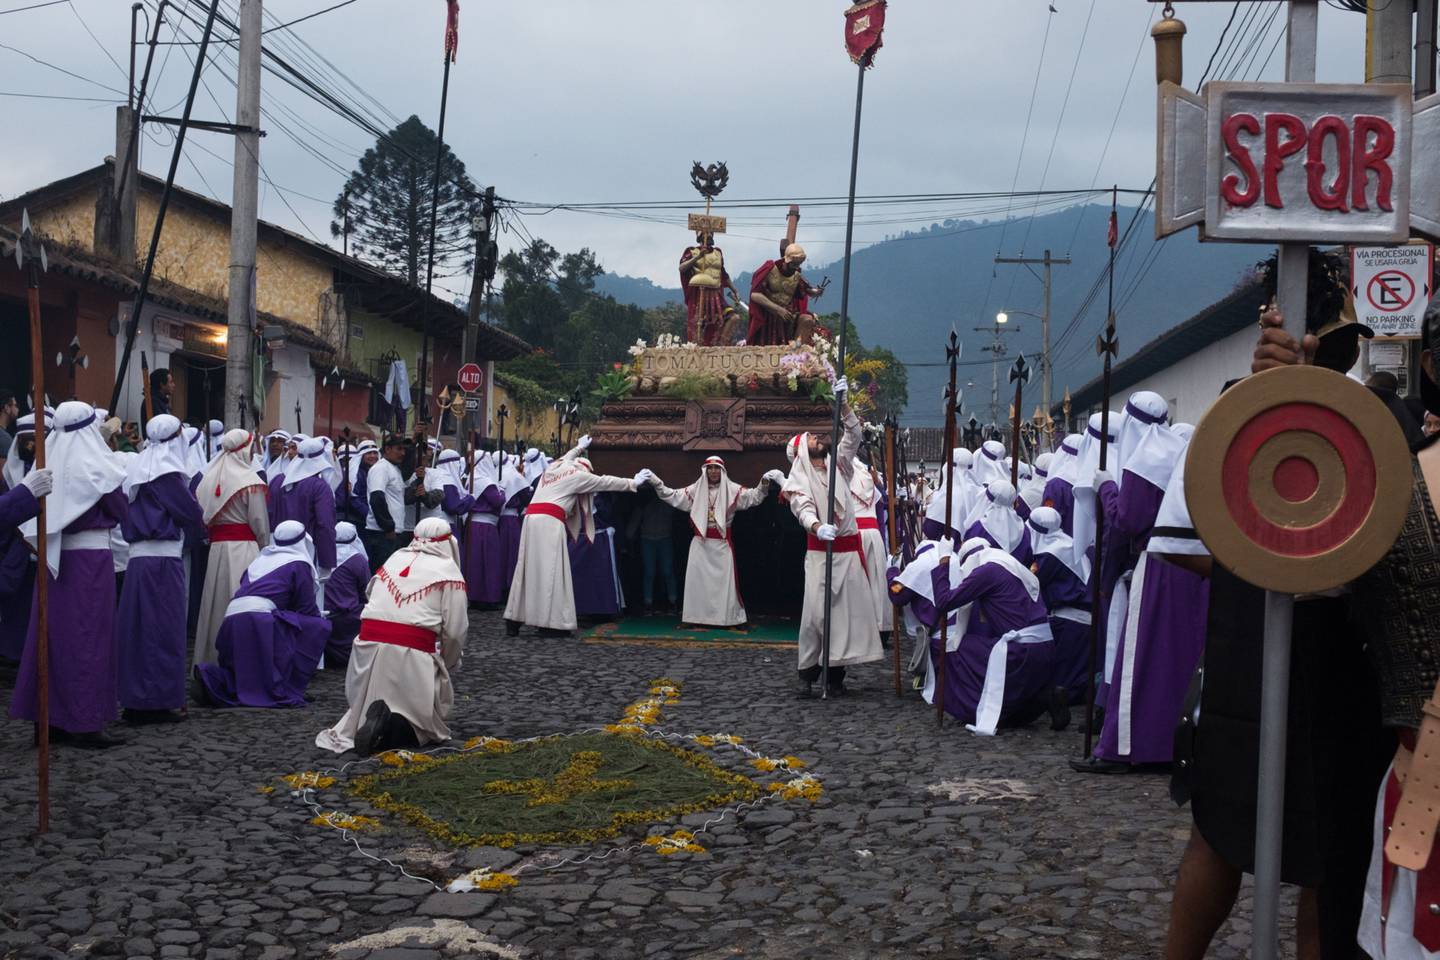 La Antigua Guatemala durante Semana Santa recibe miles de visitantes locales y extranjeros.